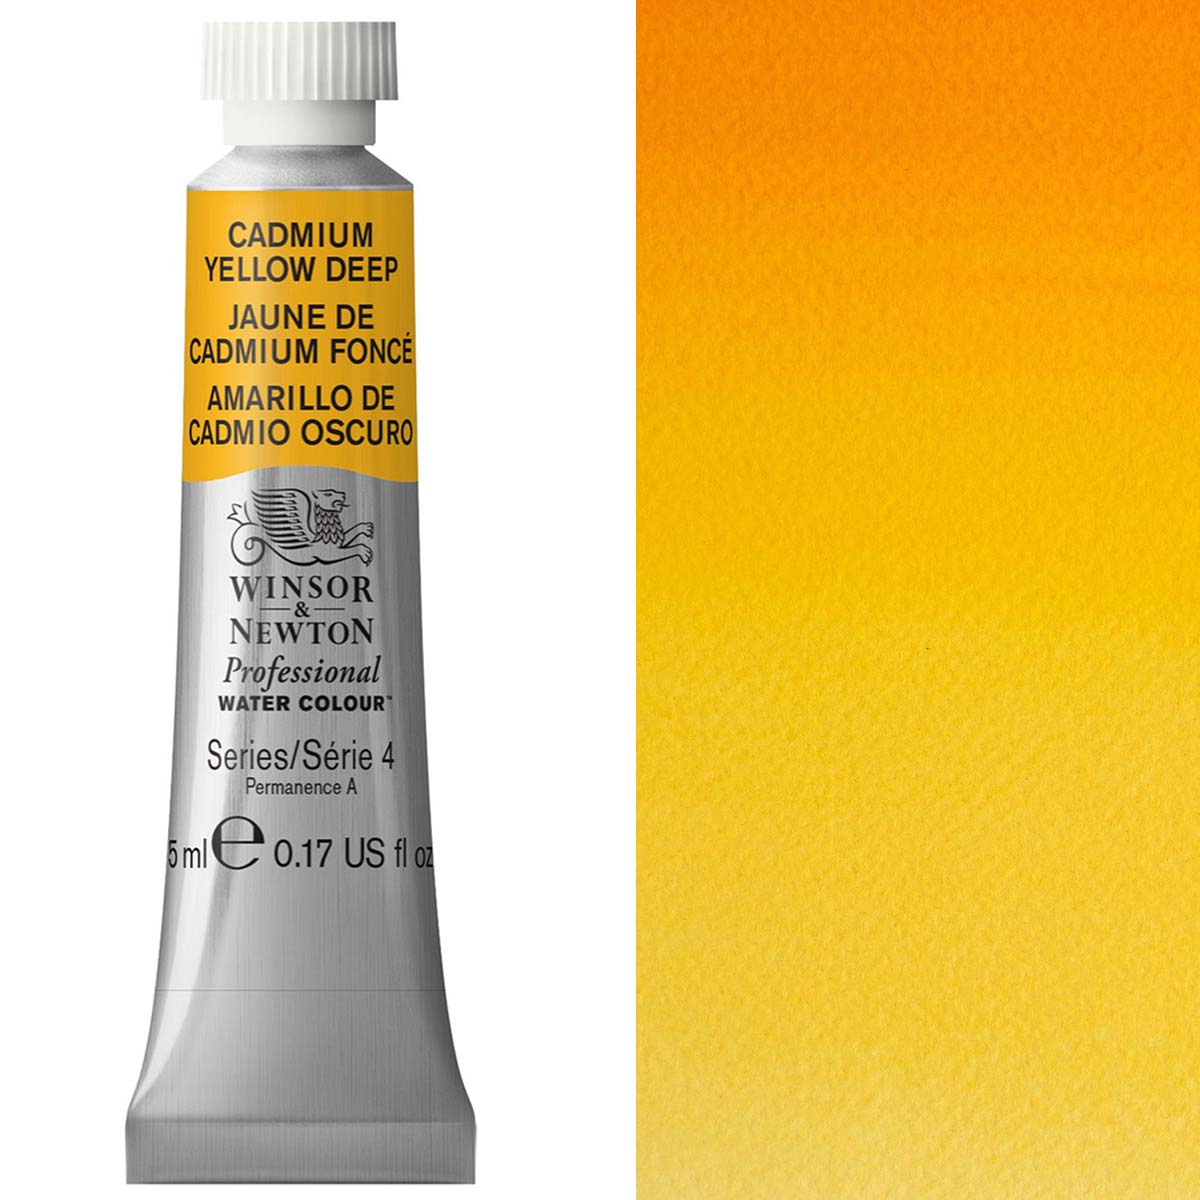 Winsor en Newton - aquarel van professionele artiesten - 5 ml - cadmium geel diep